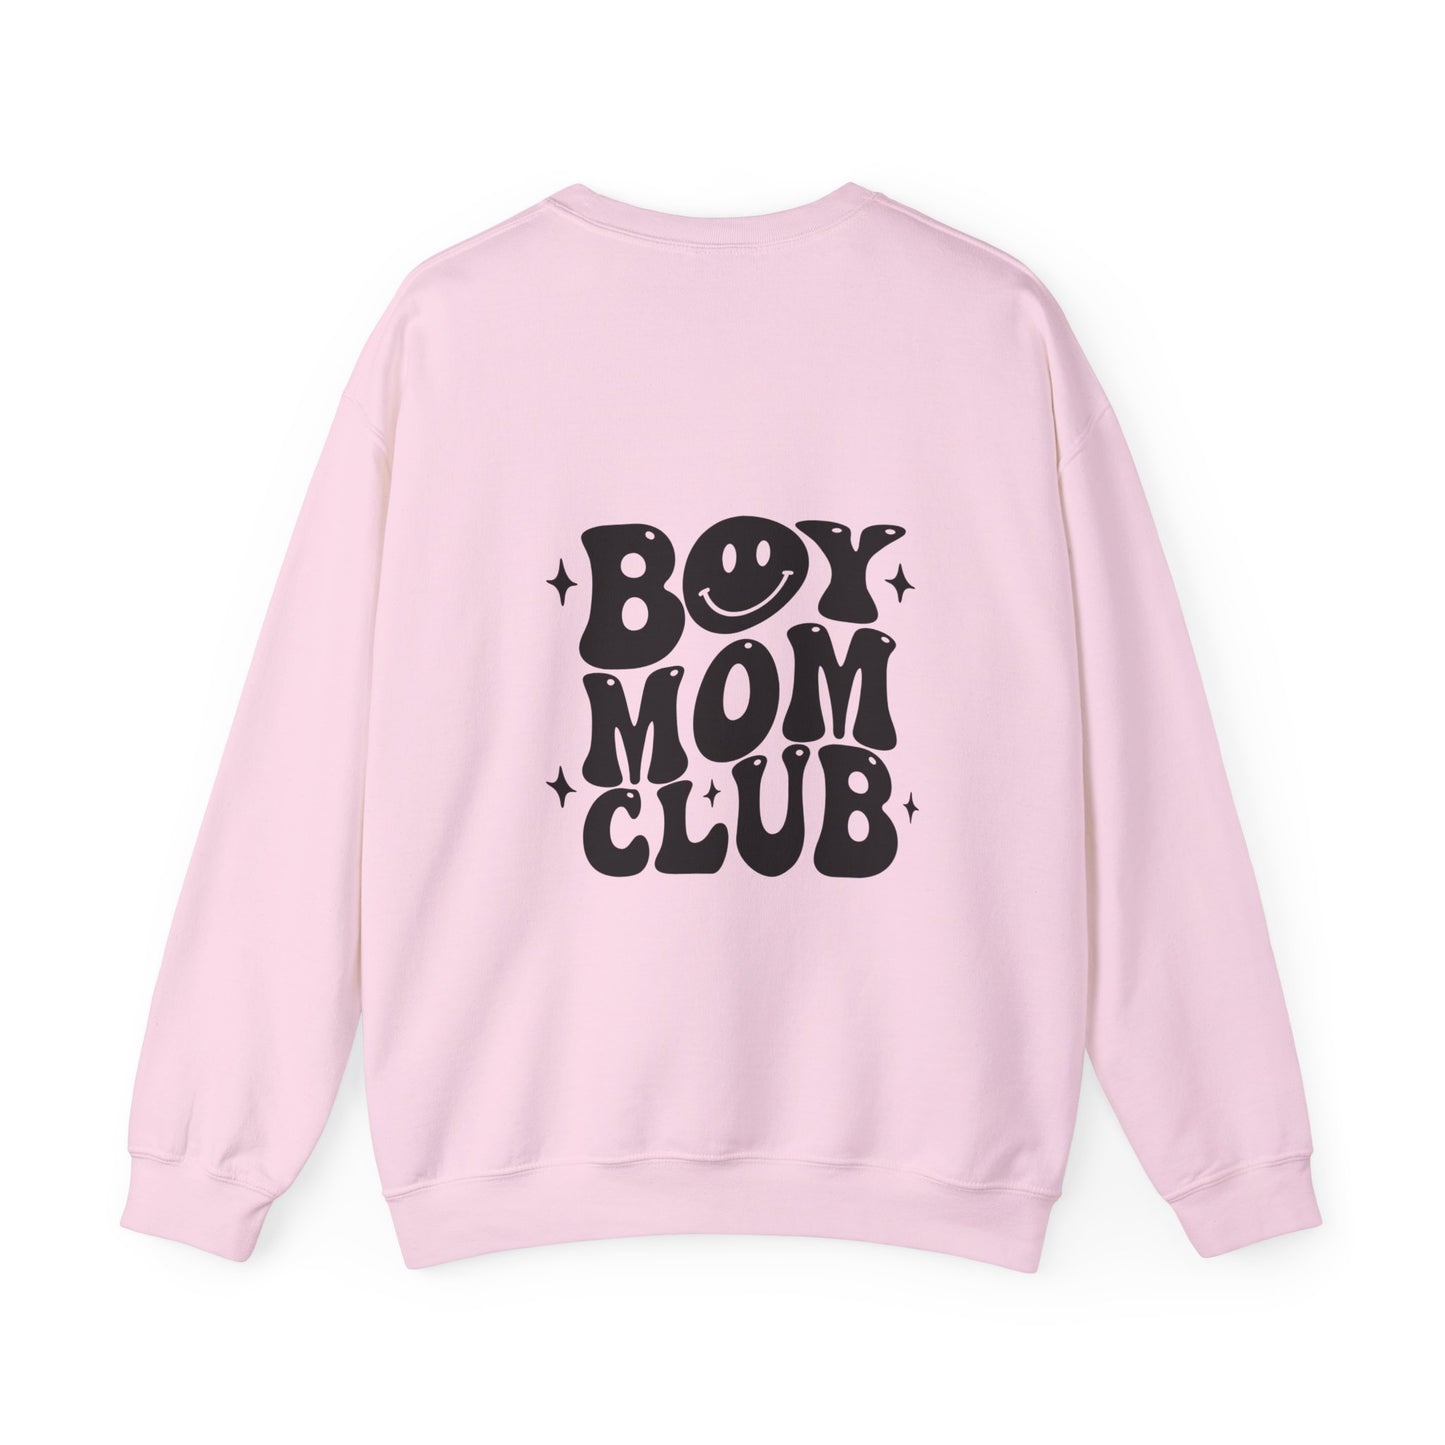 Boy Mom Club Unisex Crewneck Sweatshirt